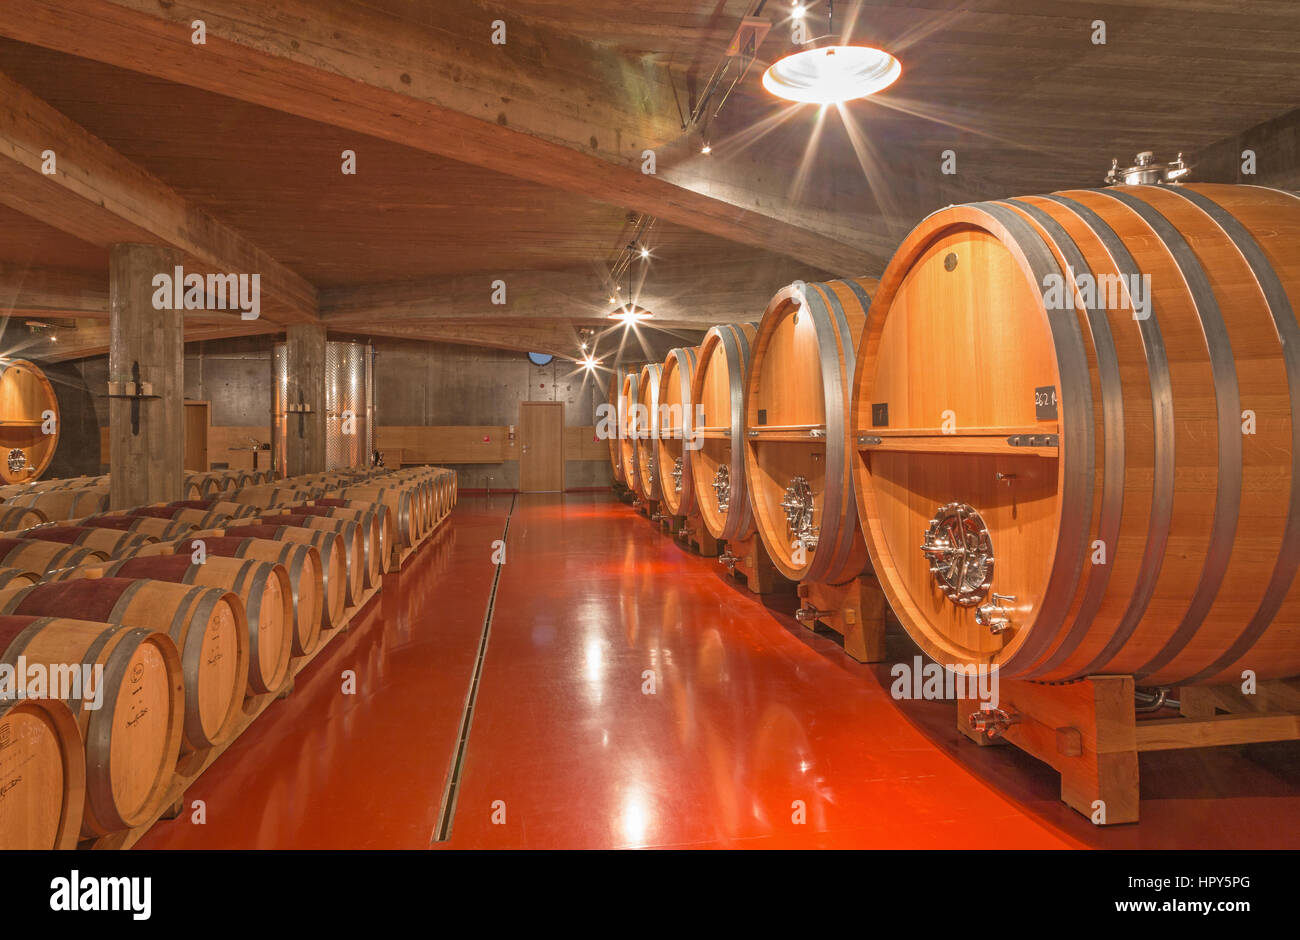 TRNAVA, Slovacchia - 3 Marzo 2014: botti da indoor della moderna cantina di vini di grande produttore slovacco 'Mrva e Stanko'. Foto Stock